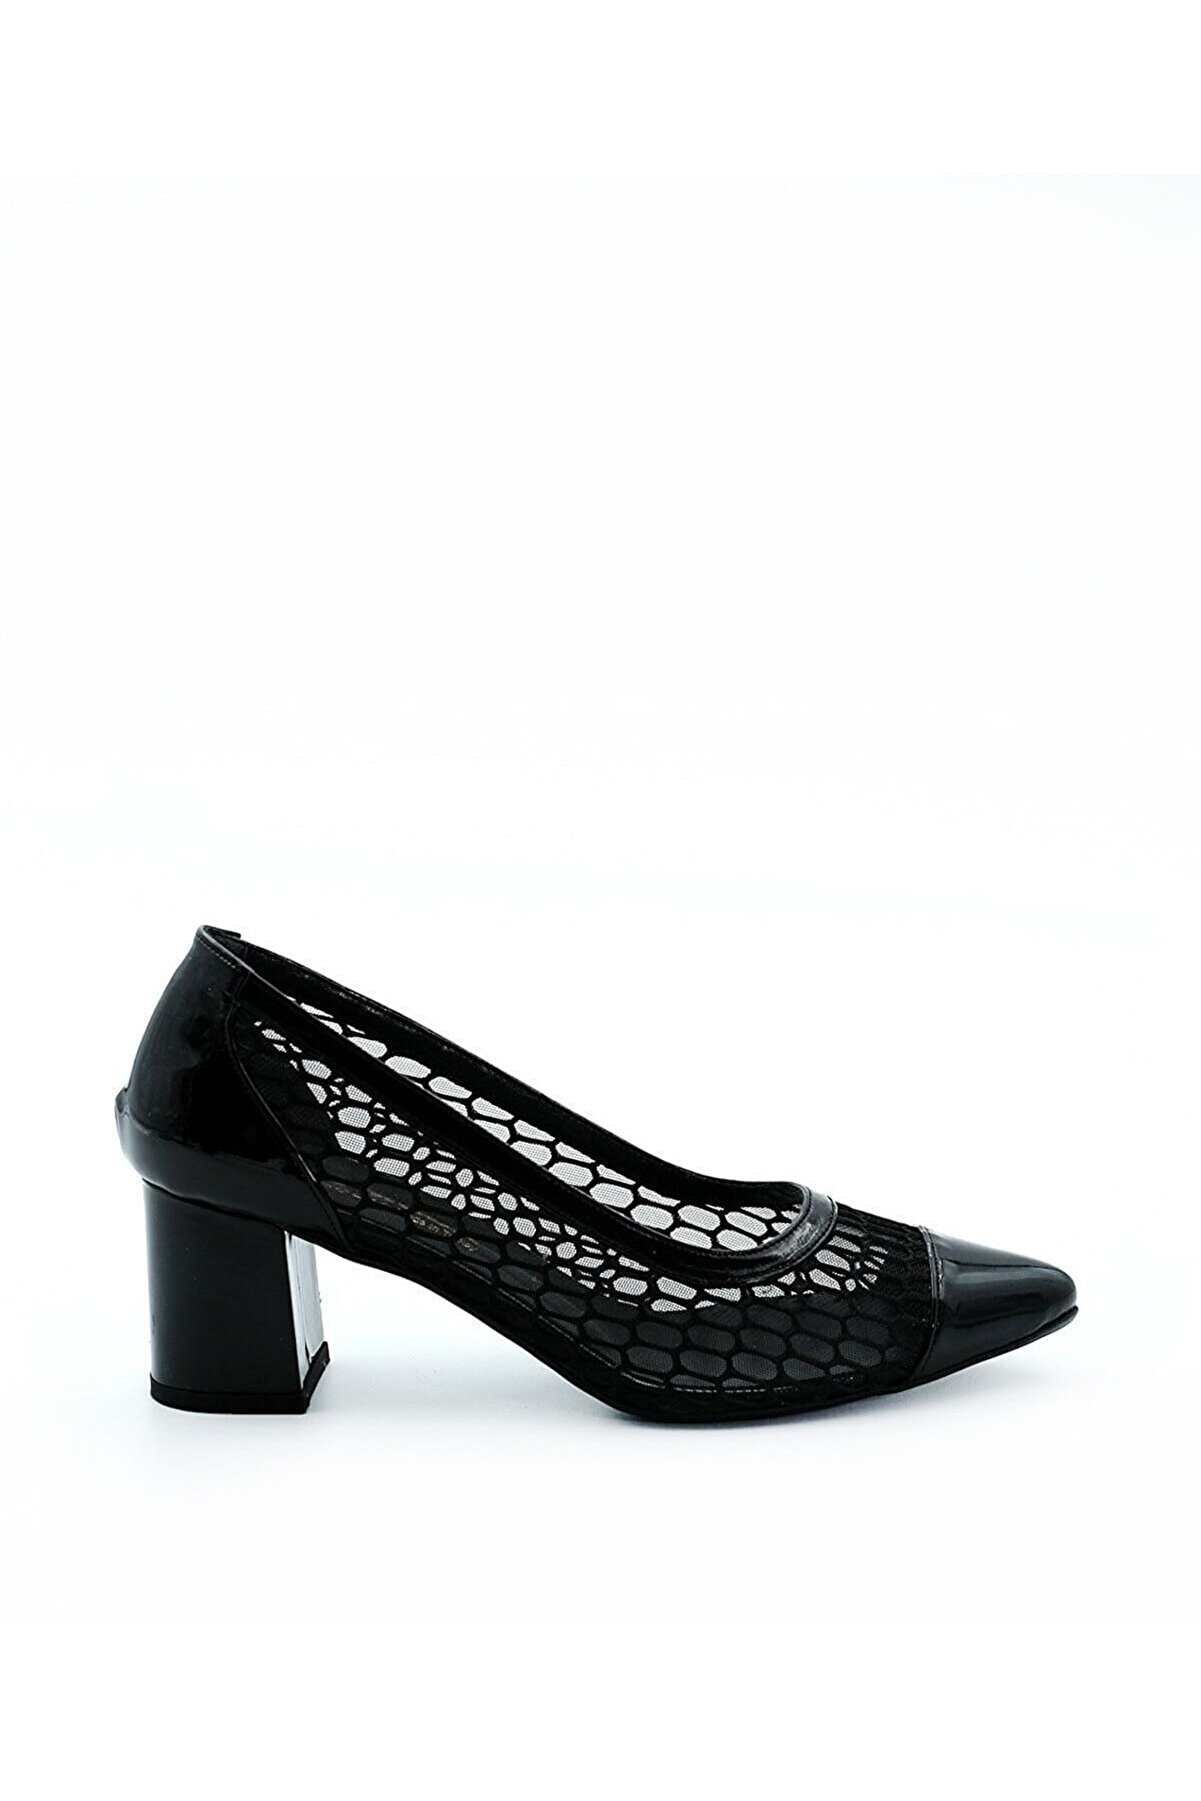 Bulut Ayakkabı Siyah Kadın Fileli Sivri Burun Günlük Topuklu Ayakkabı - Siyah - 39